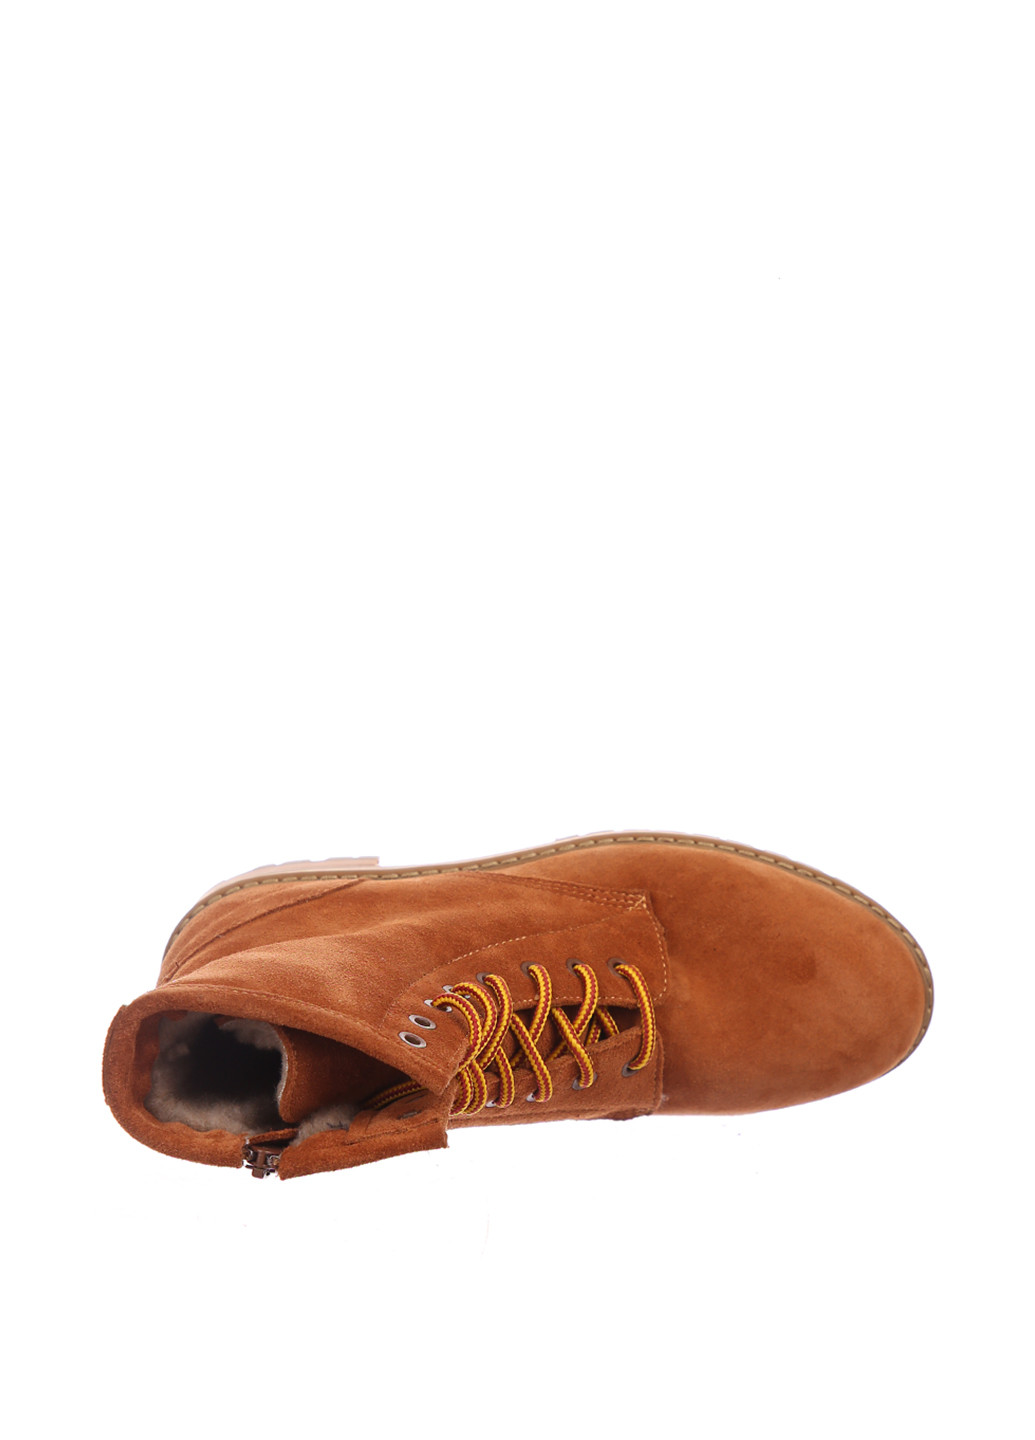 Зимние ботинки LaLeLi со шнуровкой из натуральной замши